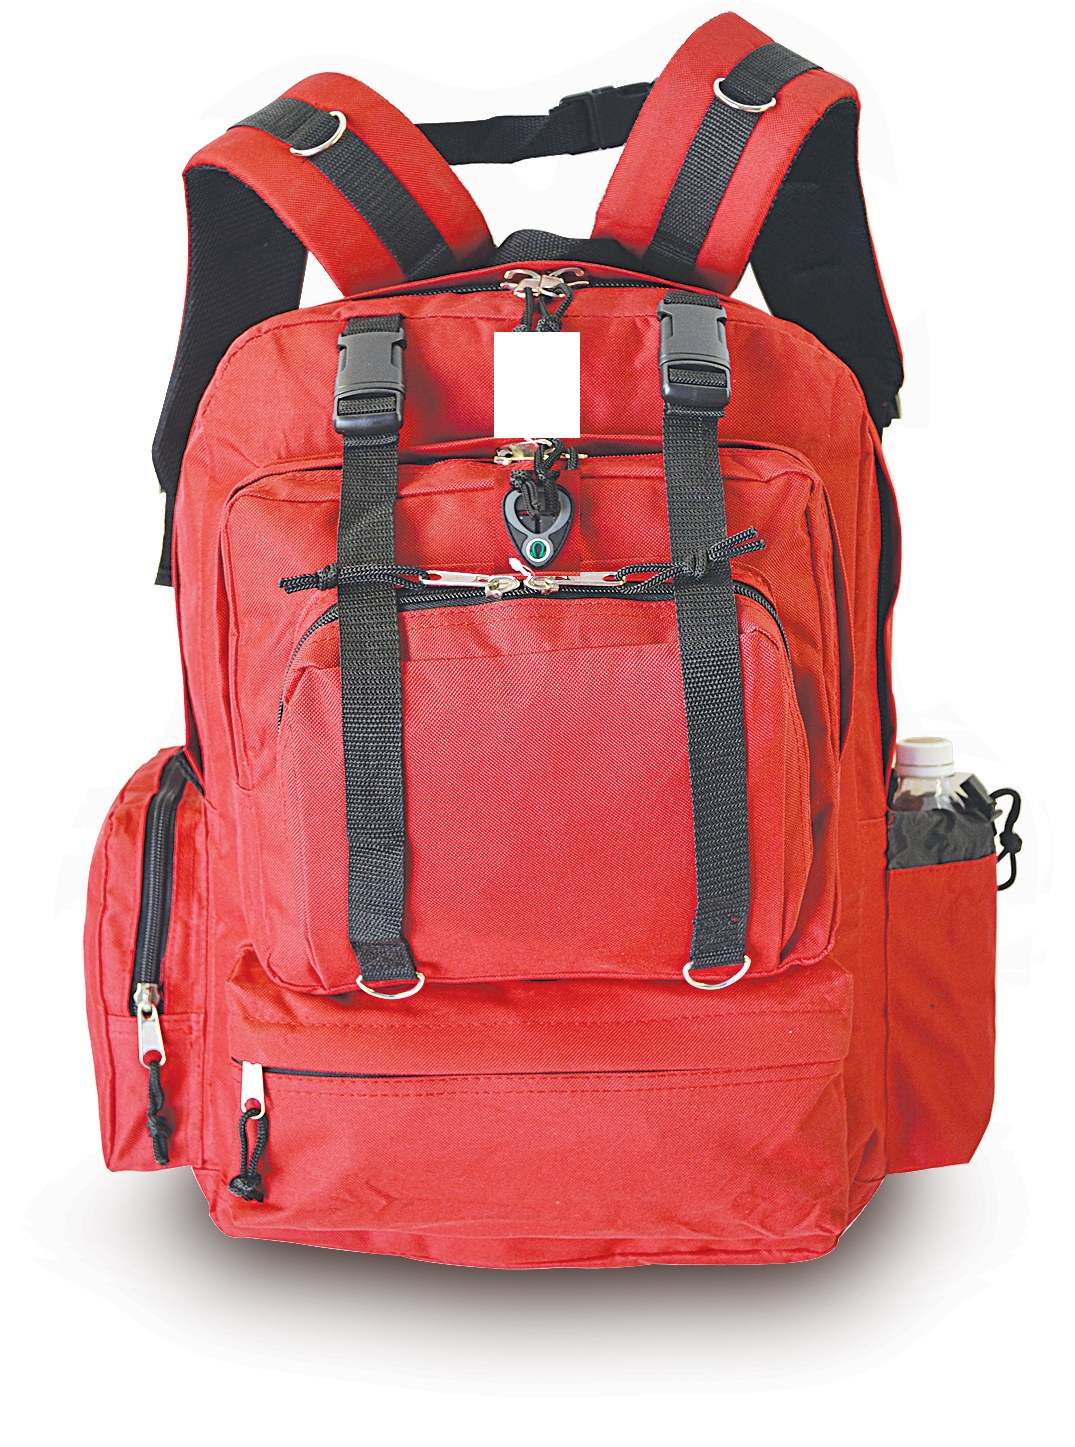 double strap hunting backpack, survival kit backpack, medical backpack